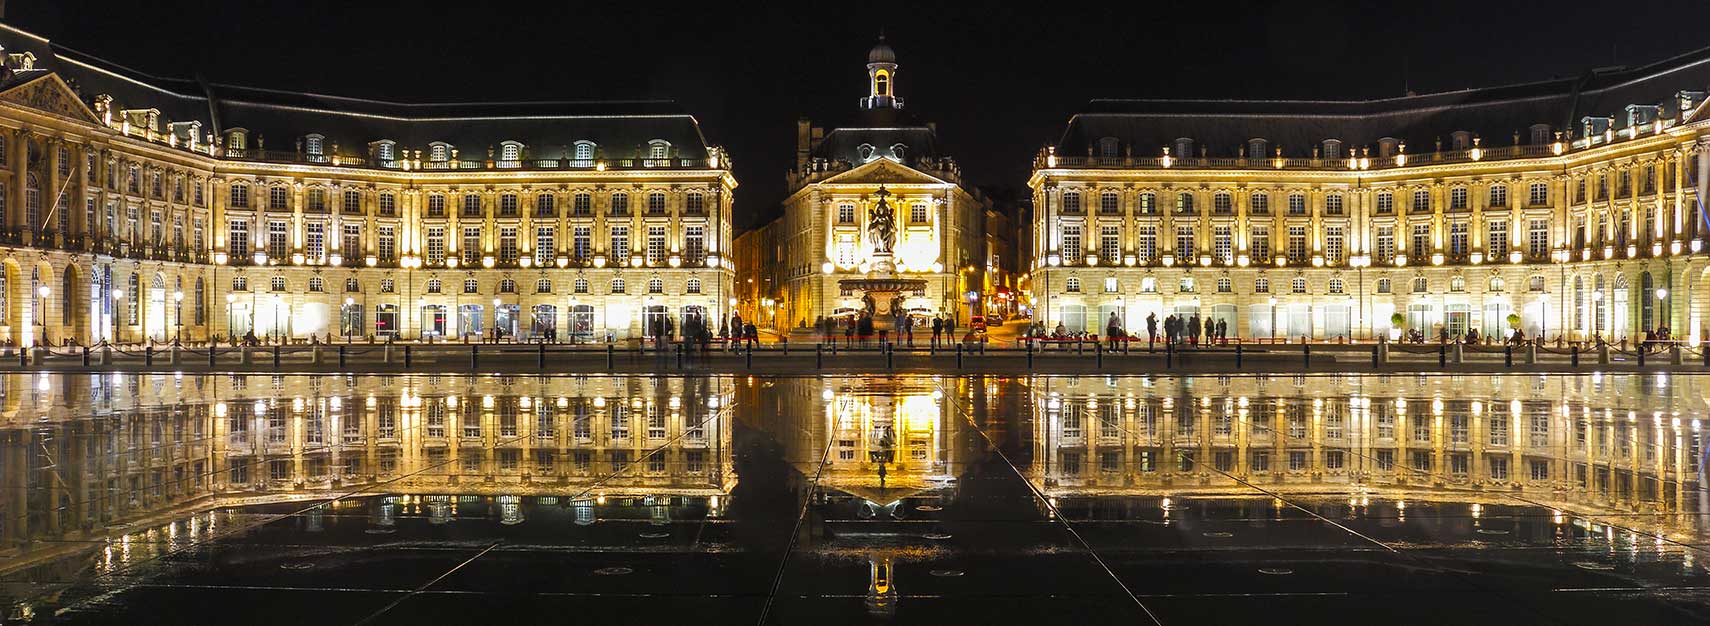 Place de la Bourse and the Miroir d'eau in Bordeaux, France